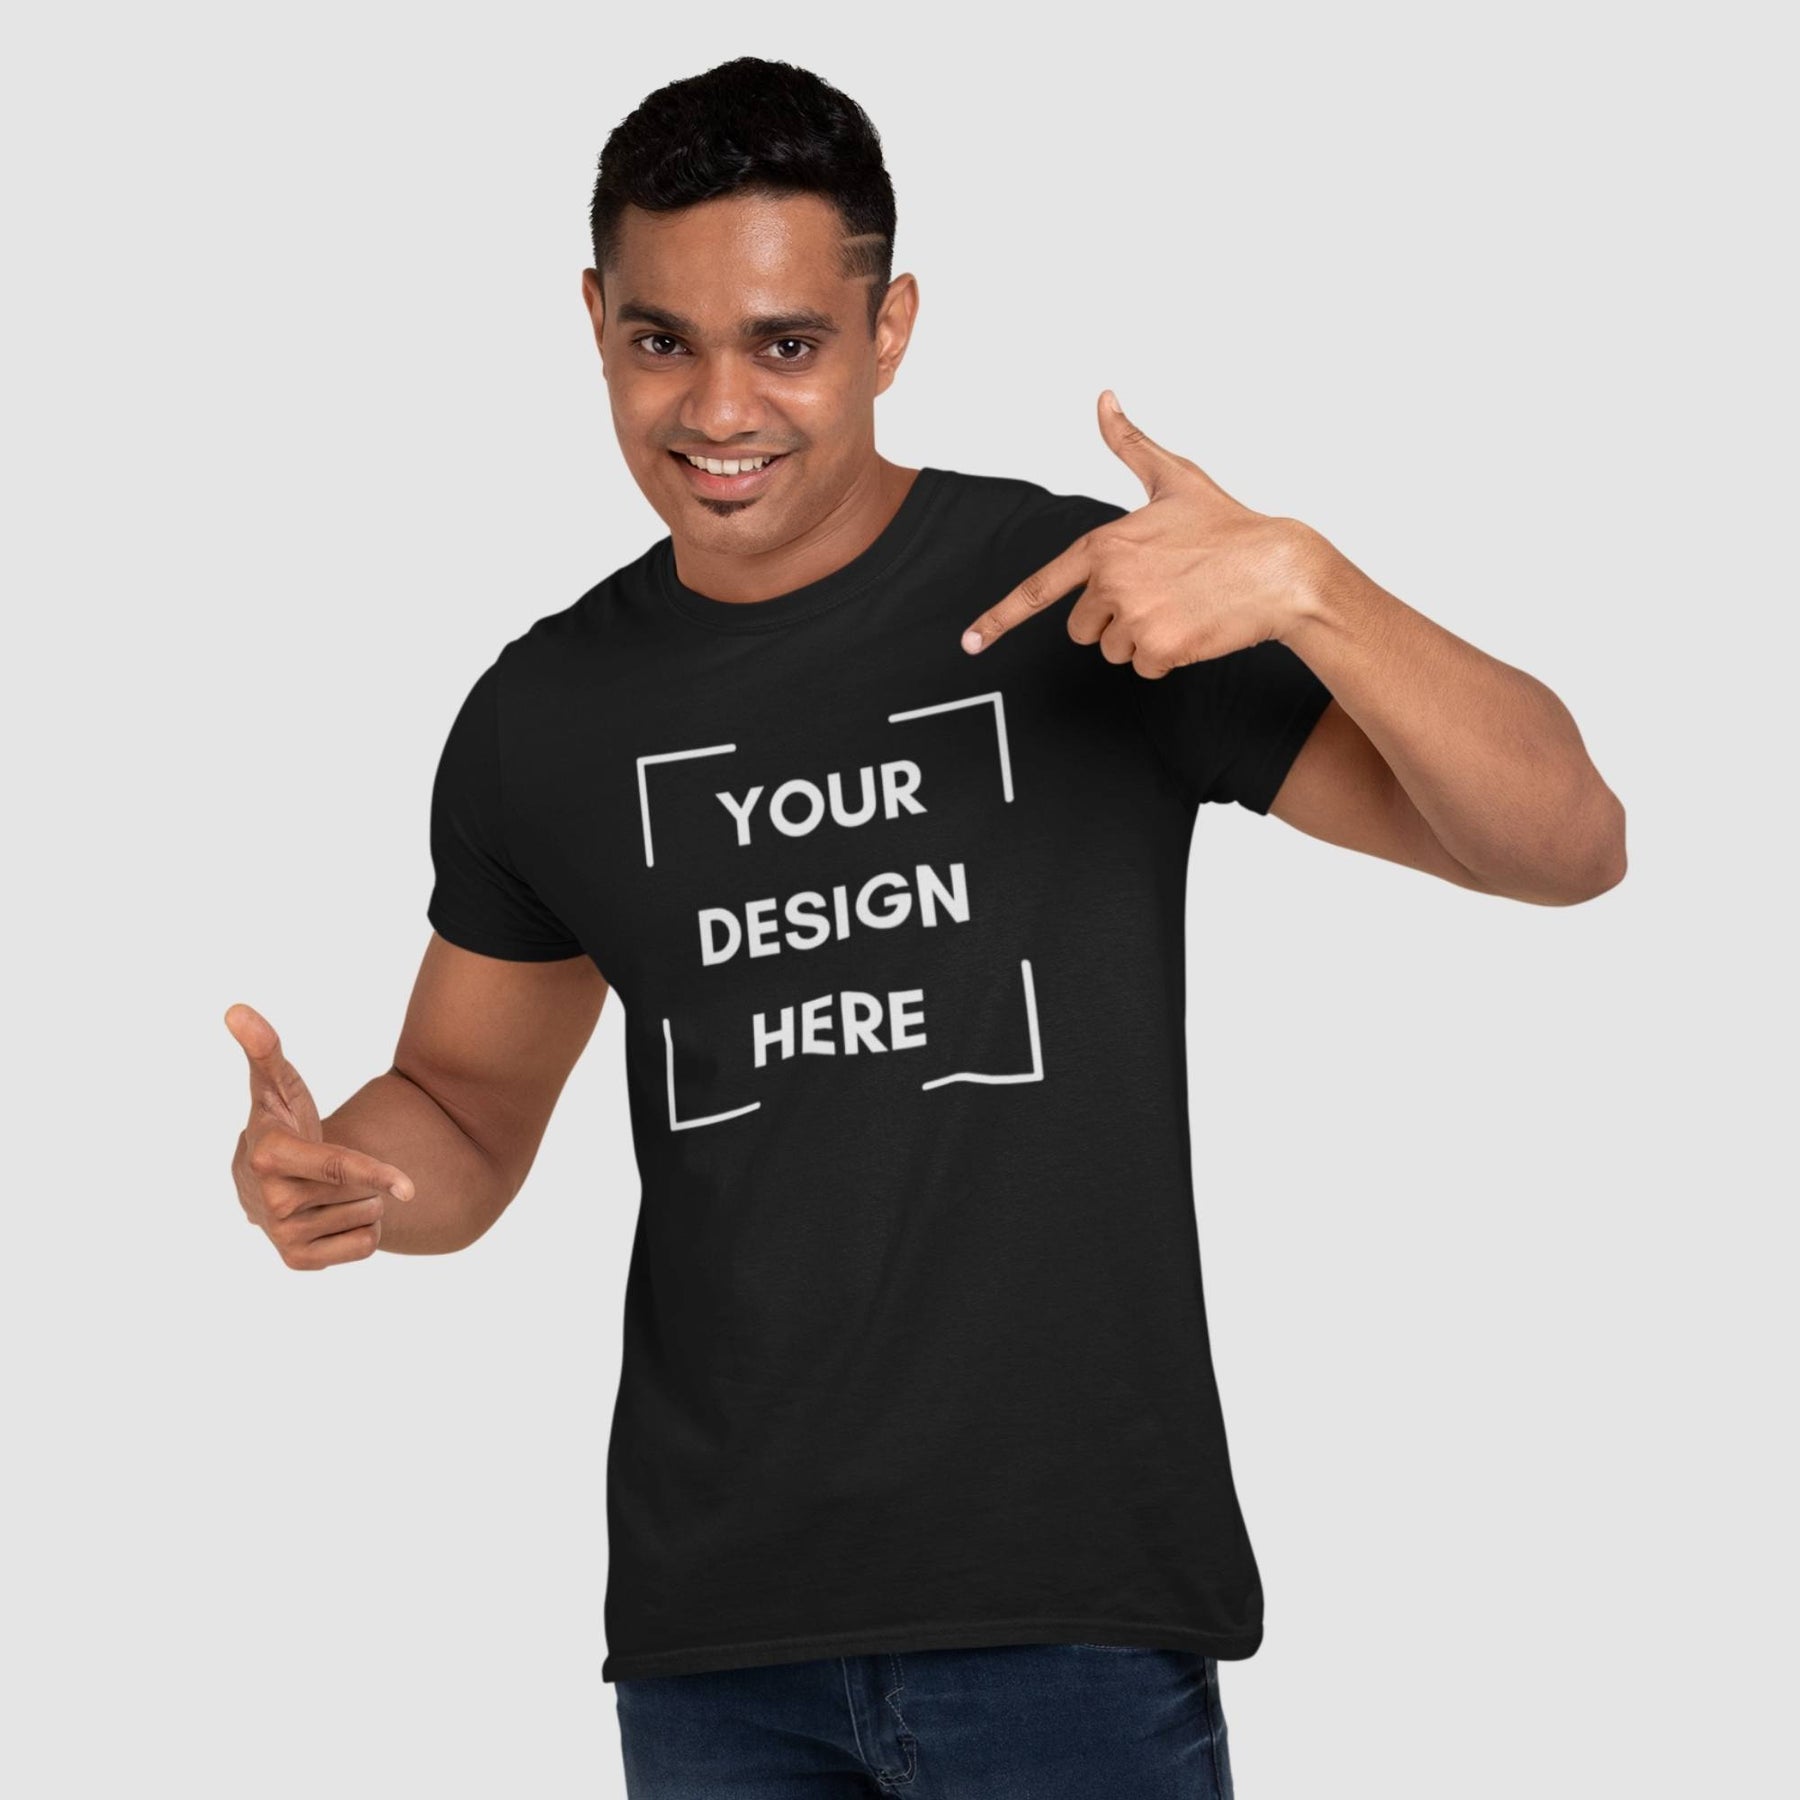 Ydeevne jorden udtale Customized T-shirt For Men